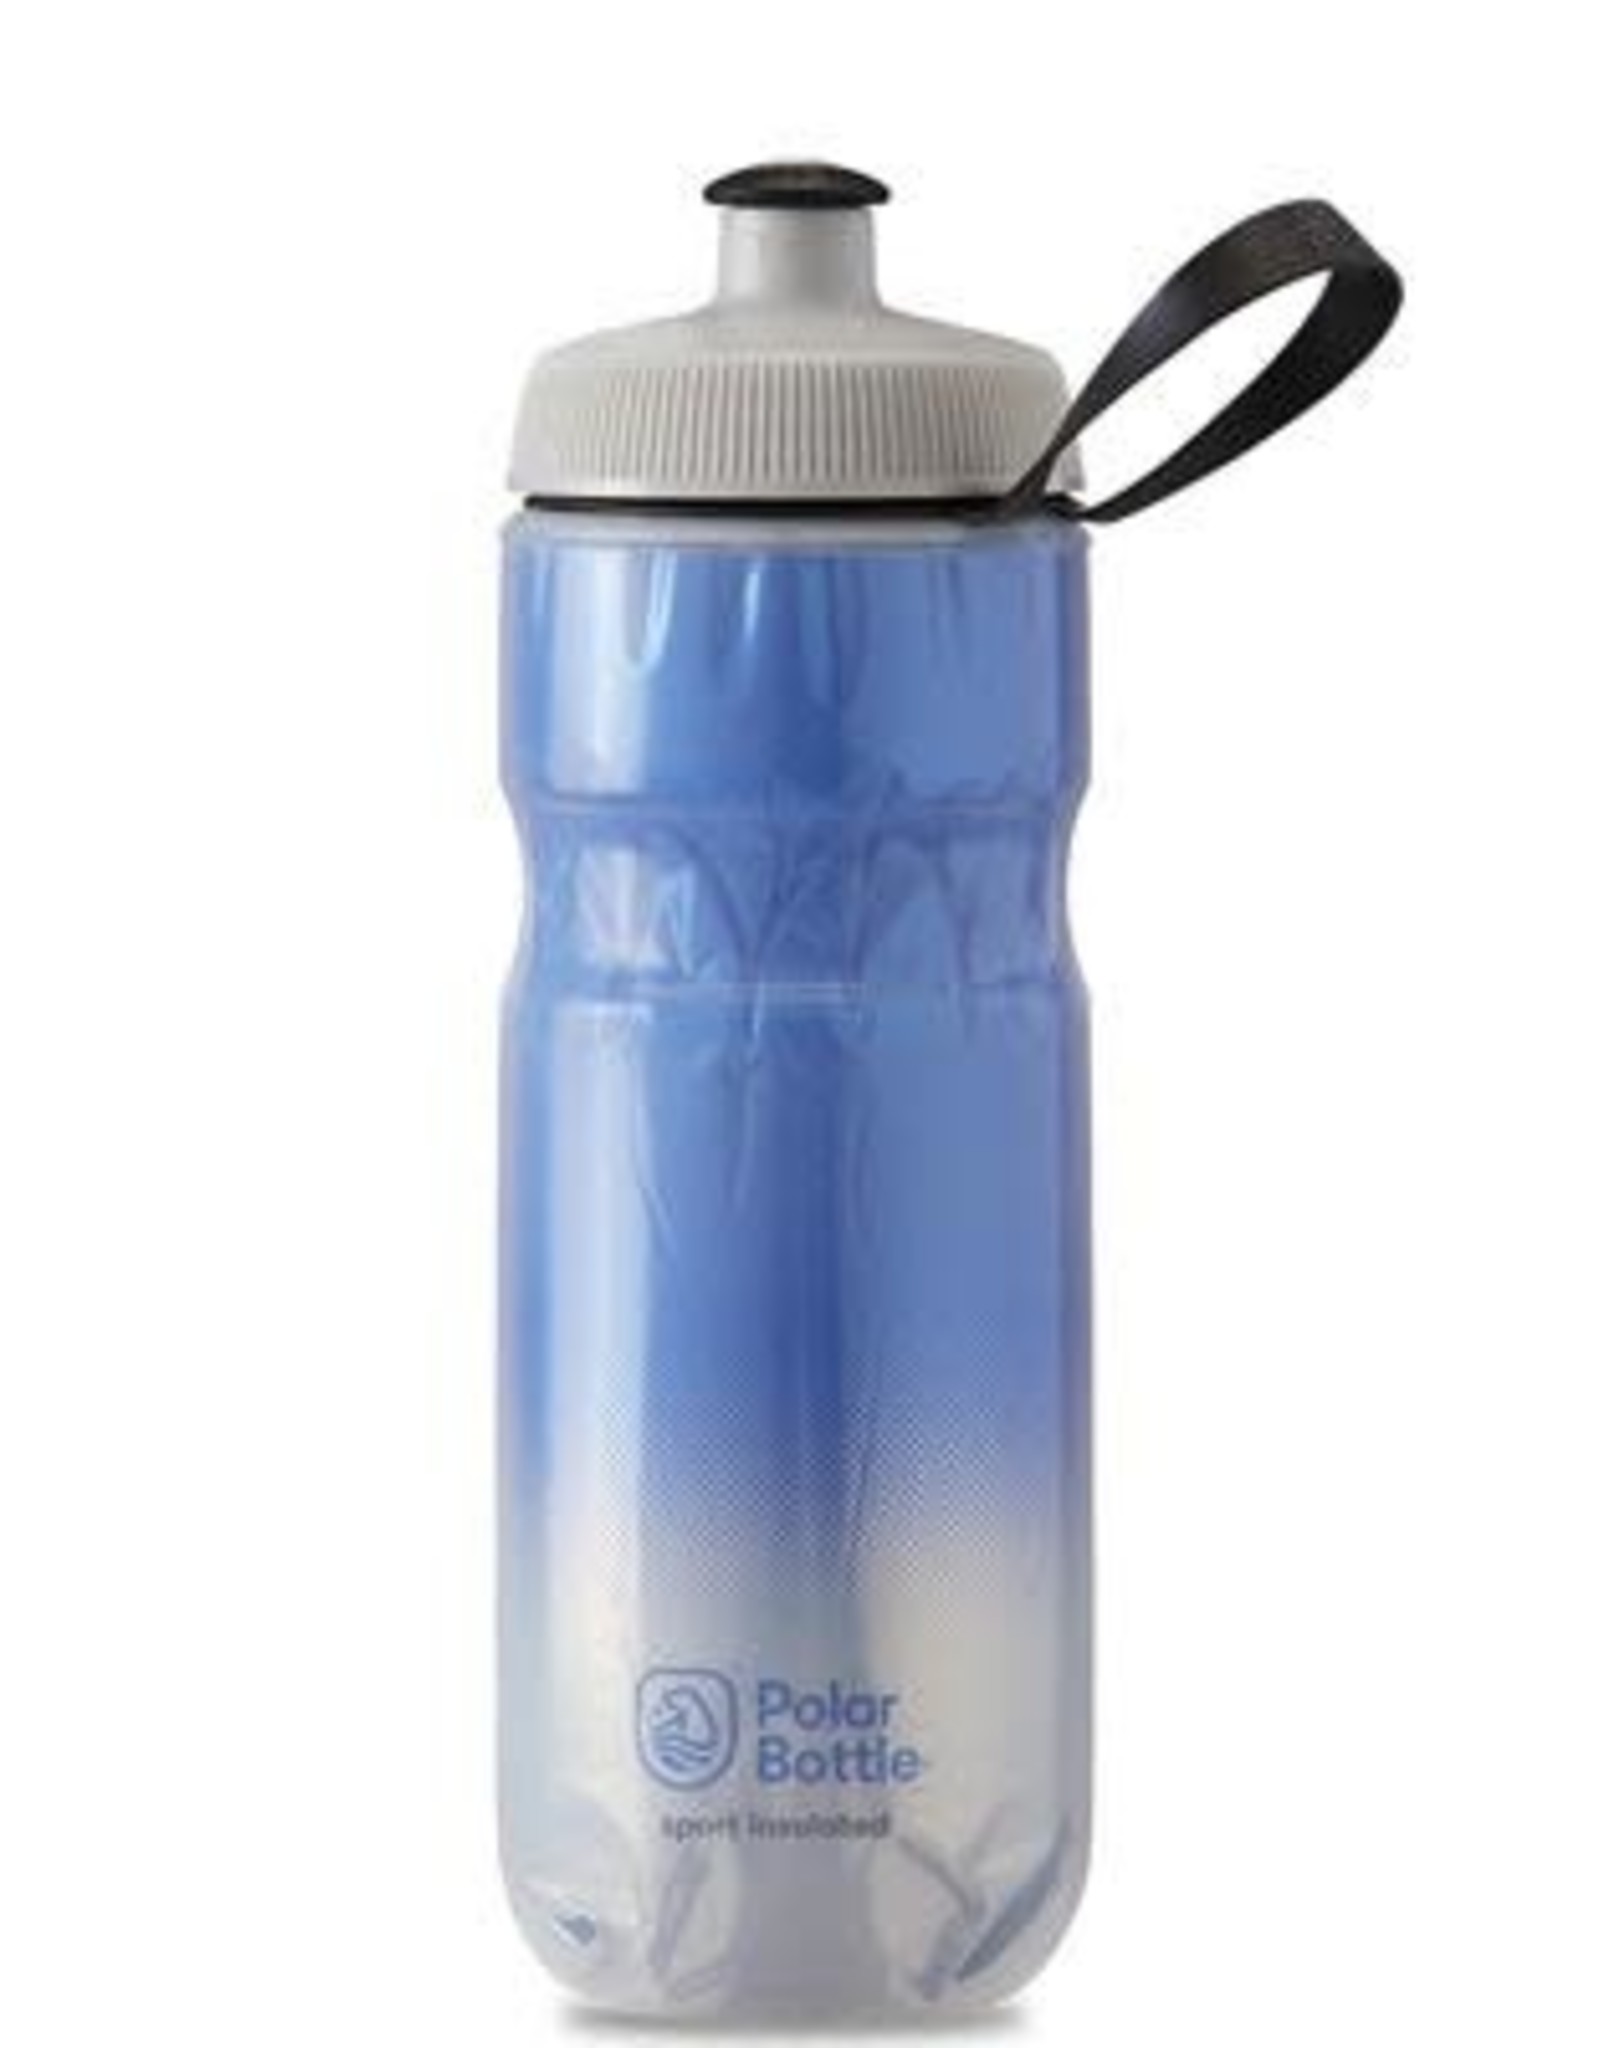 Polar Bottle Polar Sport Insulated